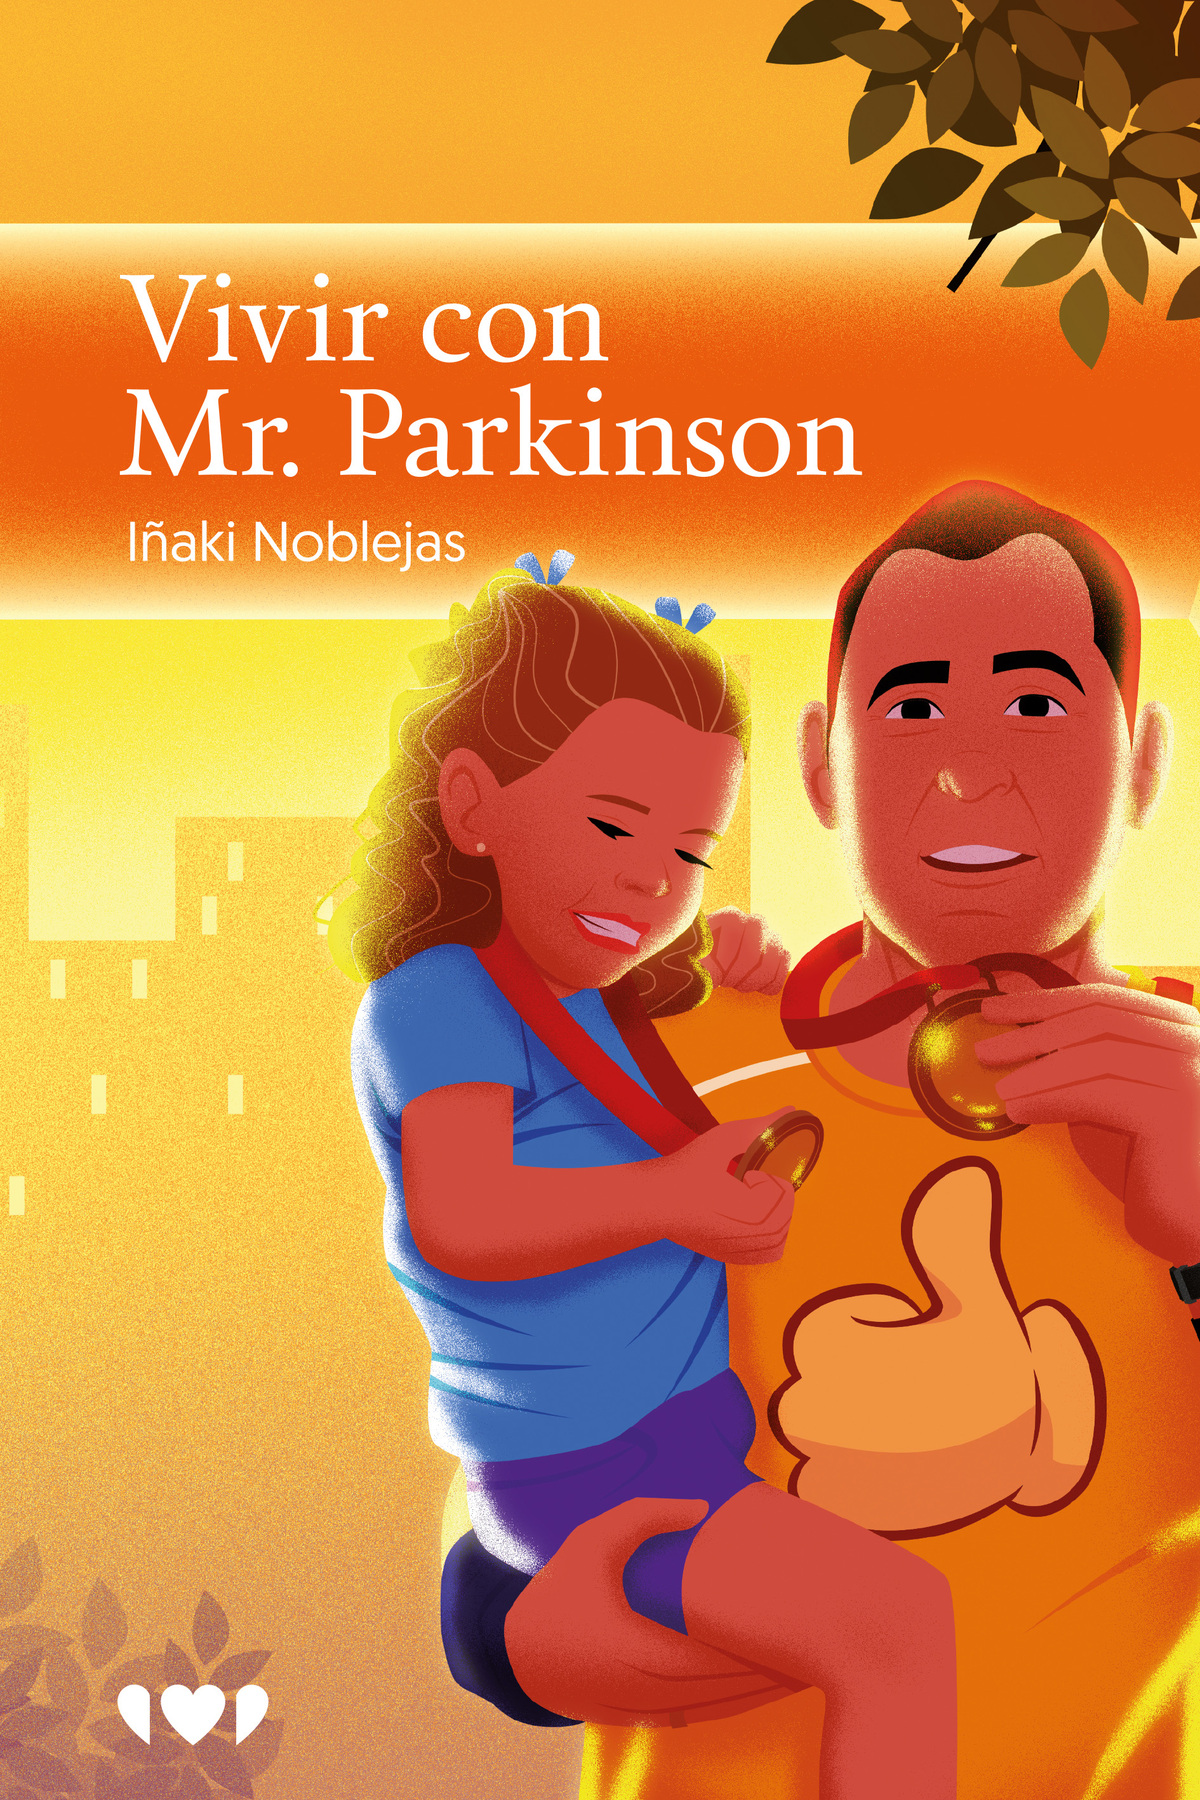 Vivir con Mr. Parkinson